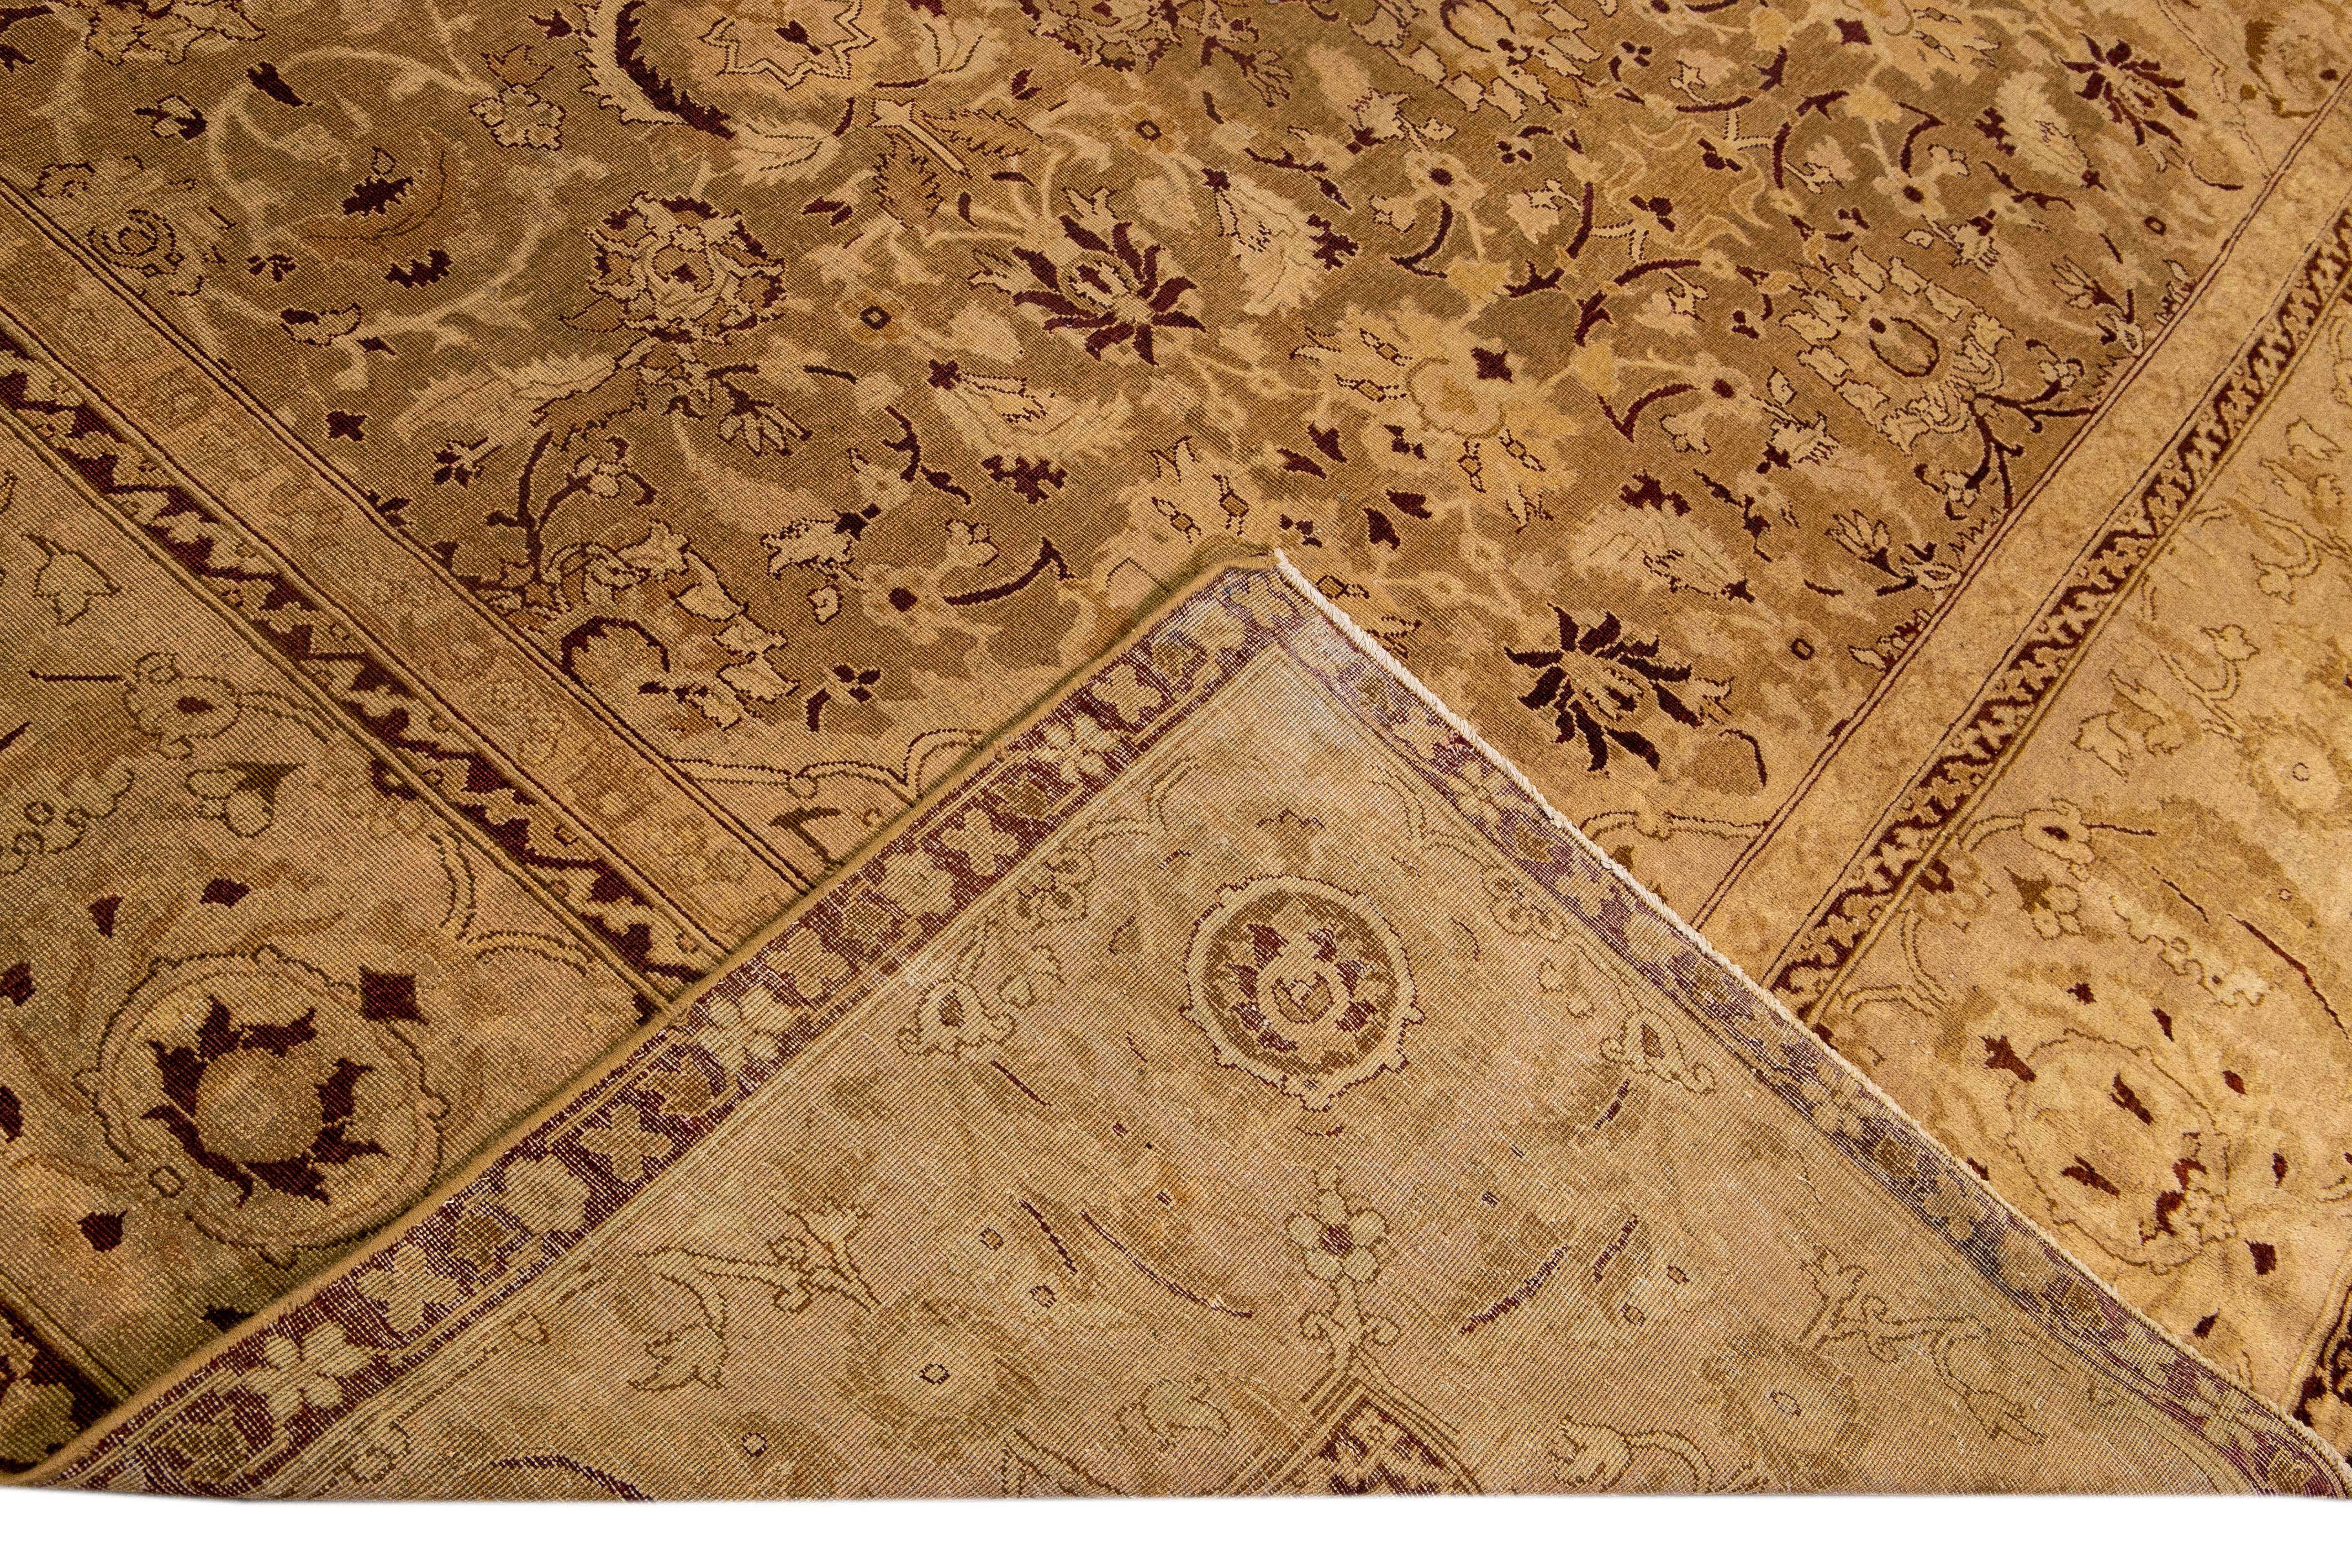 Schöner antiker indischer Agra-Teppich aus handgeknüpfter Wolle mit einem floralen Medaillonmuster auf einem hellbraunen Feld. Dieser Teppich hat durchgehend braune Akzente.

Dieser Teppich misst: 10'8